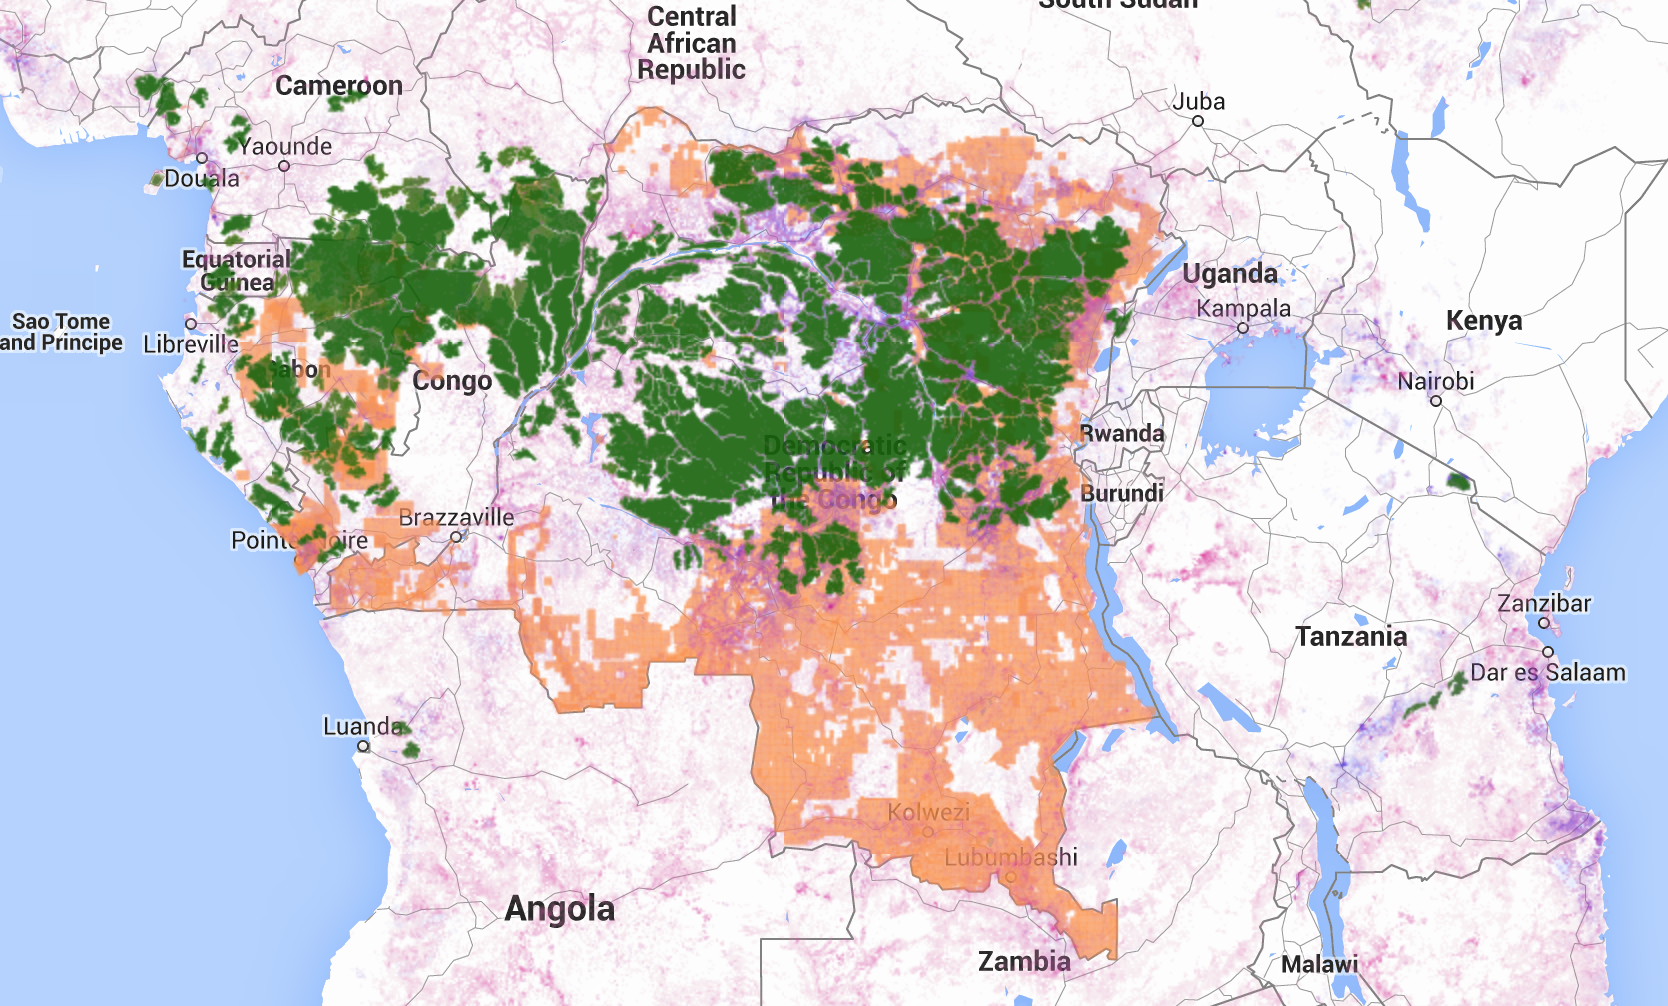 deforestation in Central Africa